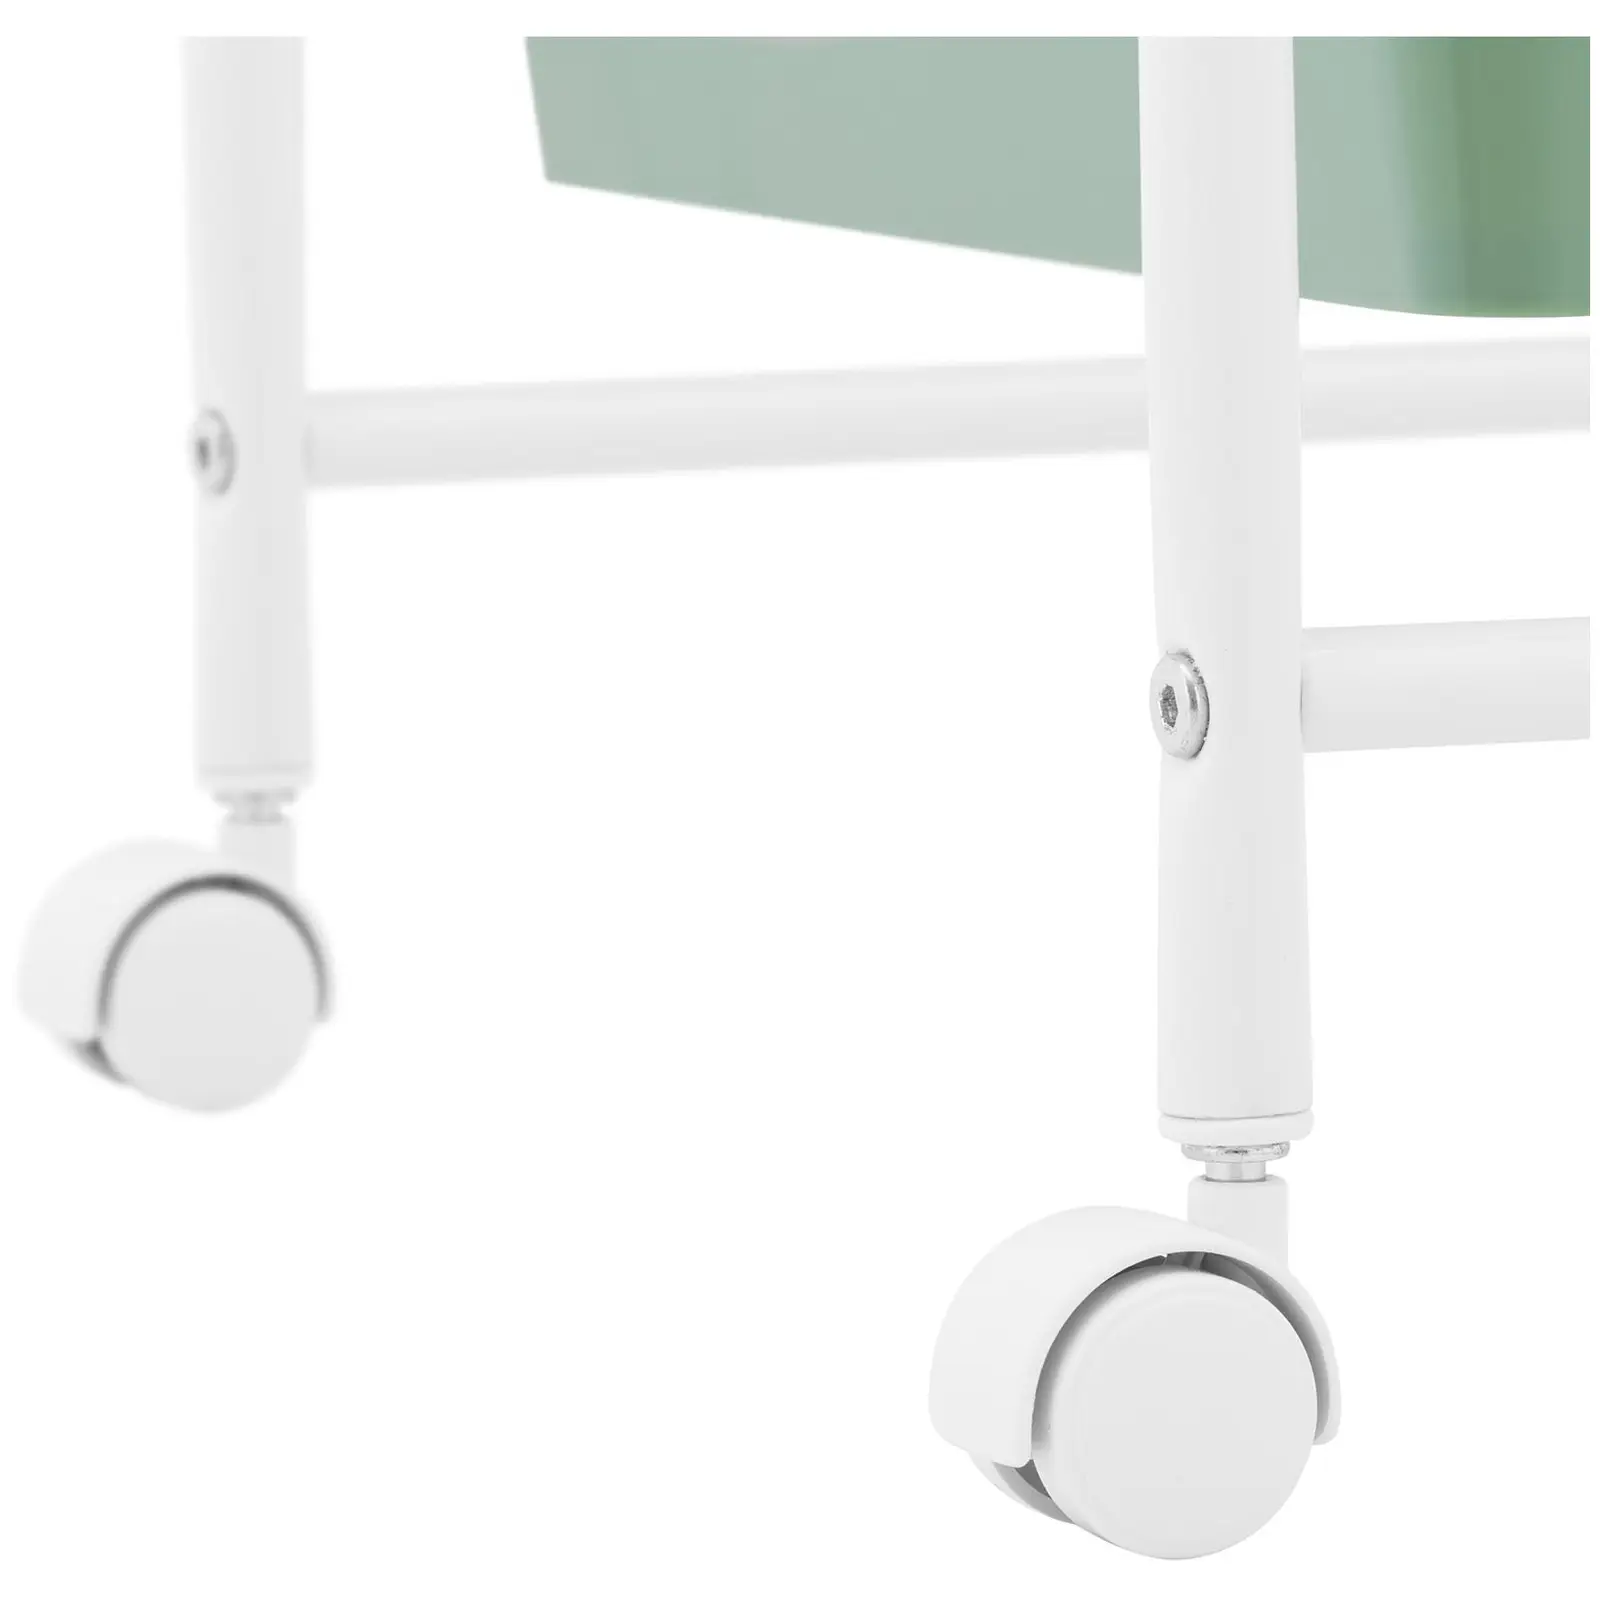 Trillebord for salong - 6 skuffer - beige/grønn